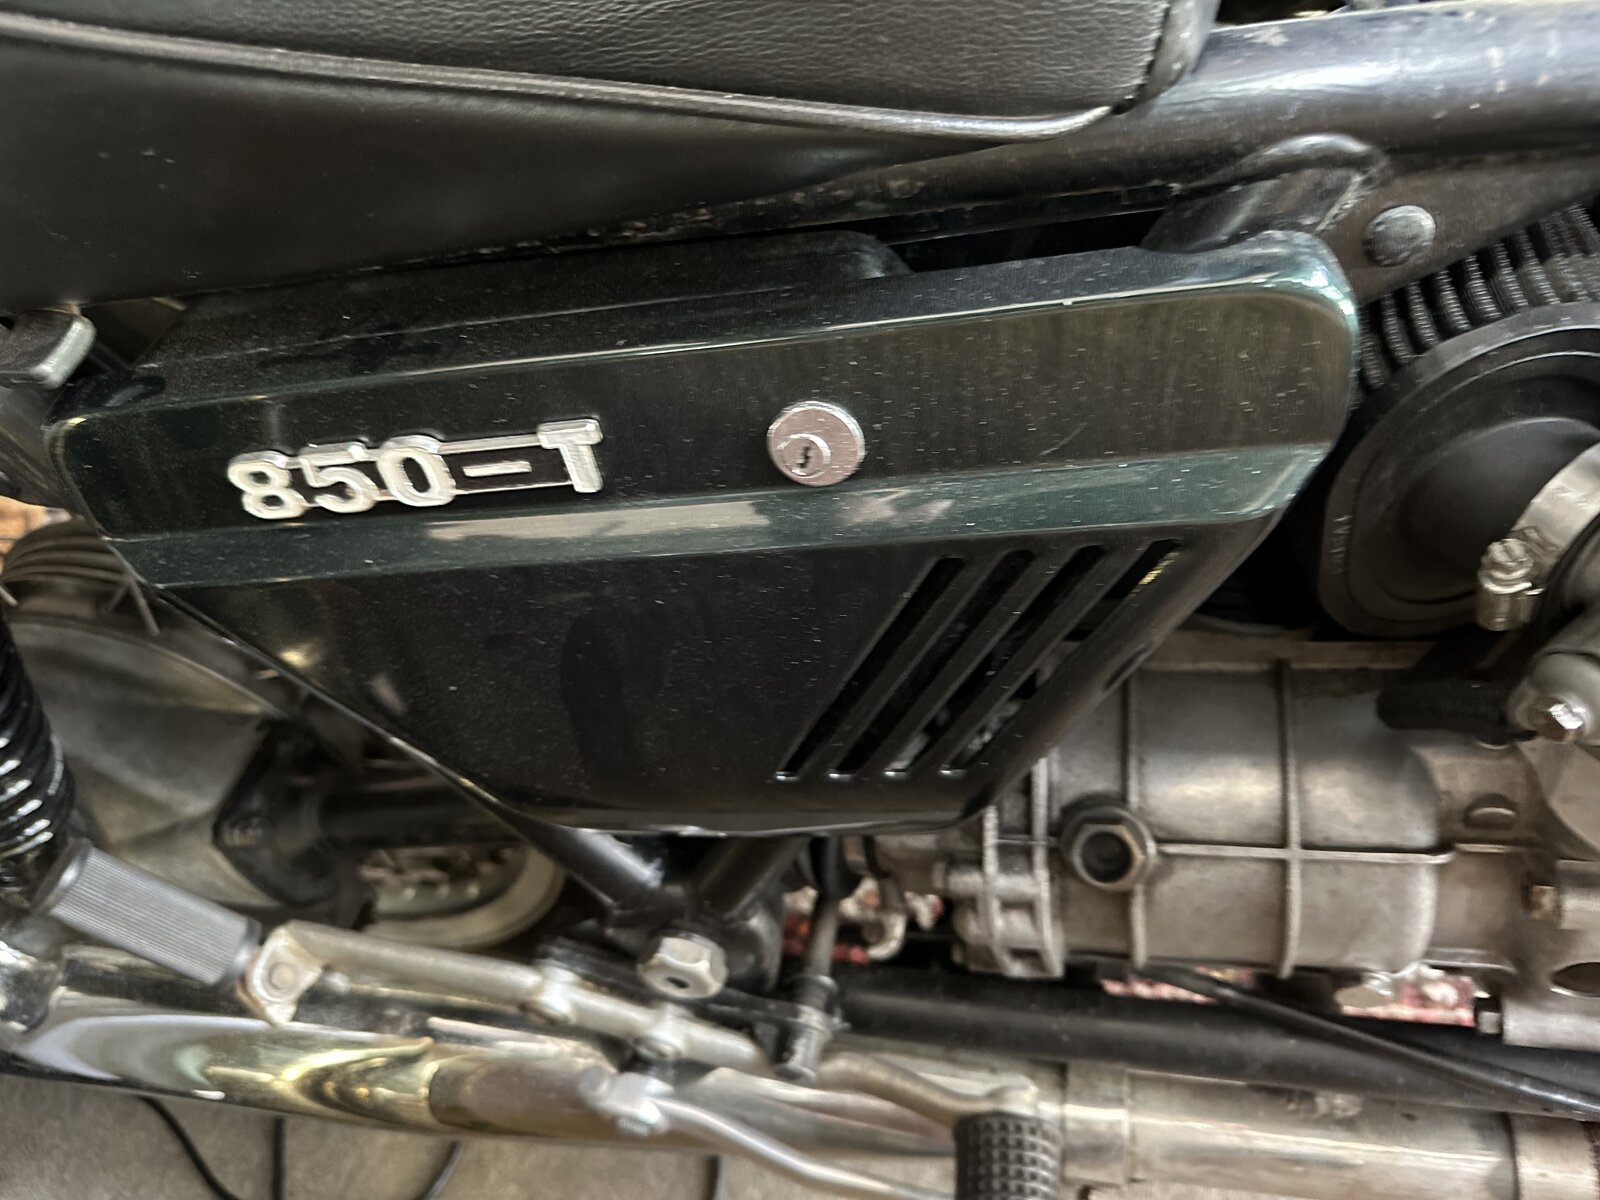 Moto-Guzzi 850T or Mille?